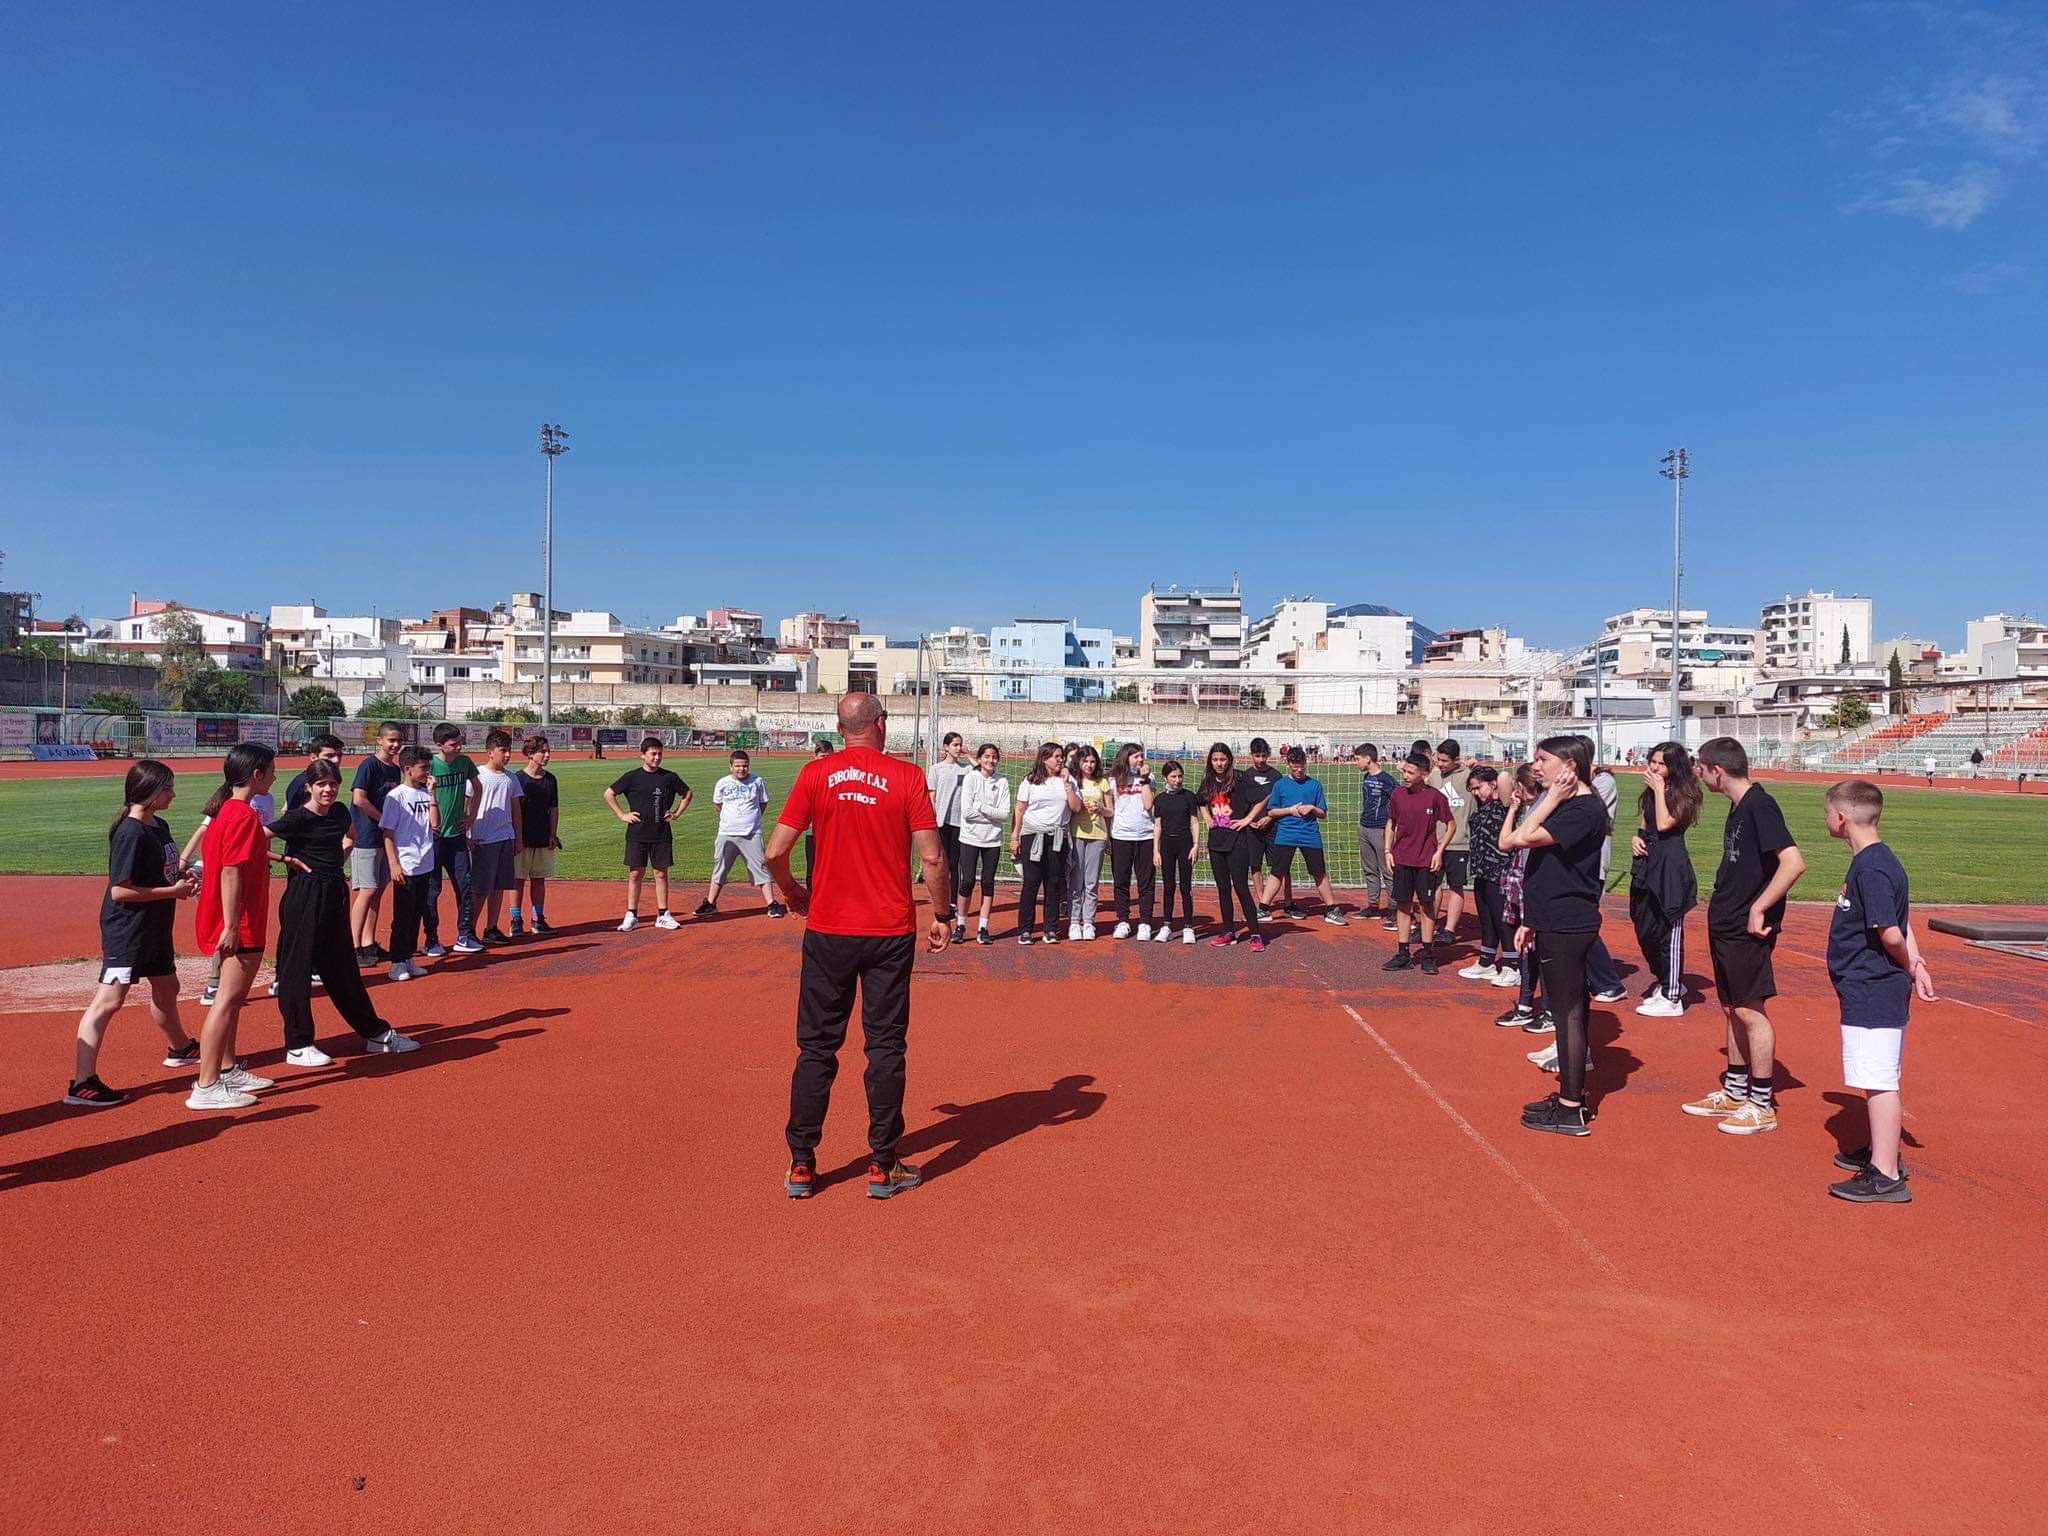 ΕΥΒΟΪΚΟΣ Γ.Α.Σ.: Παρουσίασε σε μαθητές δημοτικού και γυμνασίου το άθλημα του στίβου (pics)